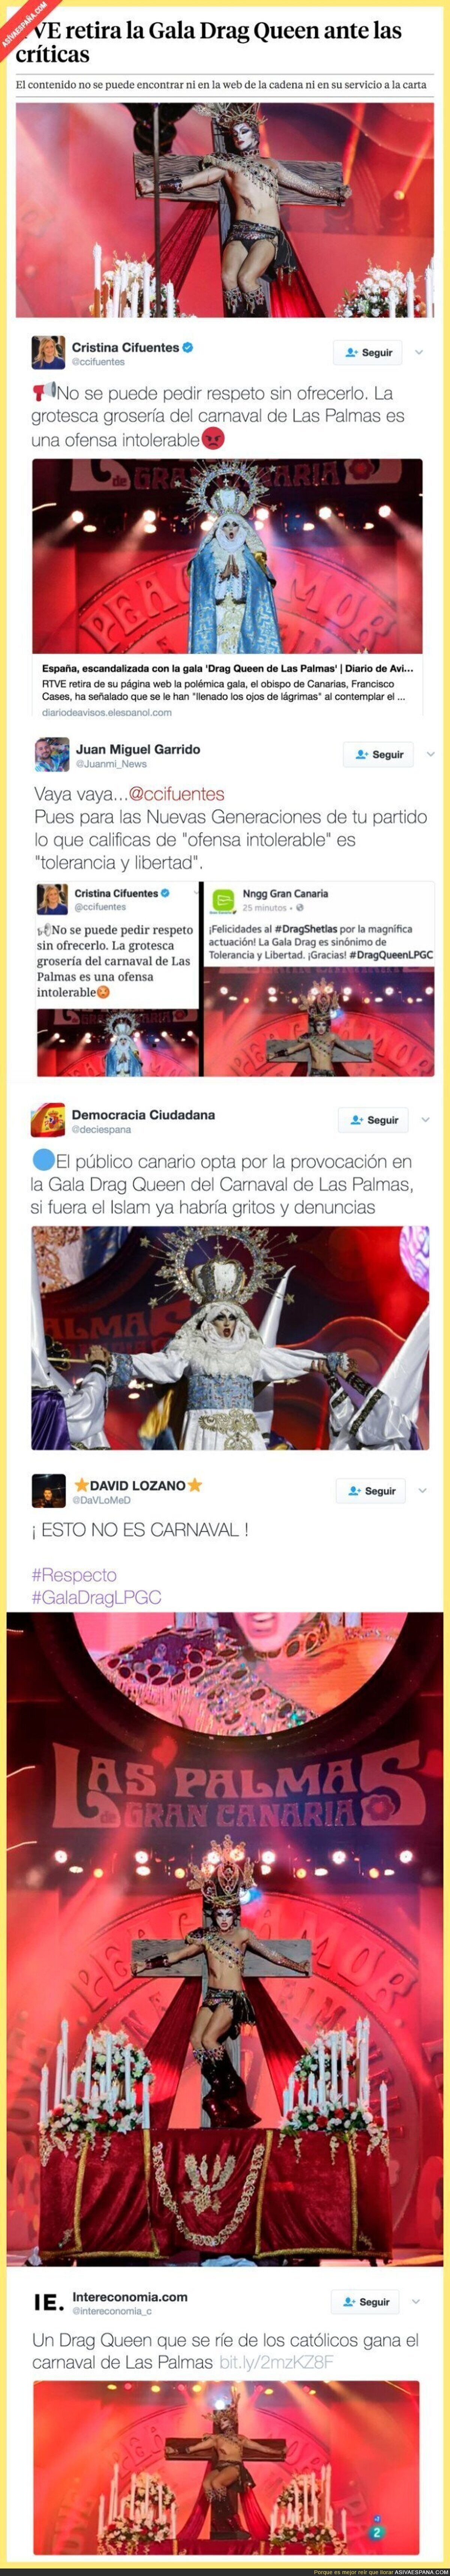 Polémica máxima por el ganador de la Gala Drag Queen de Las Palmas